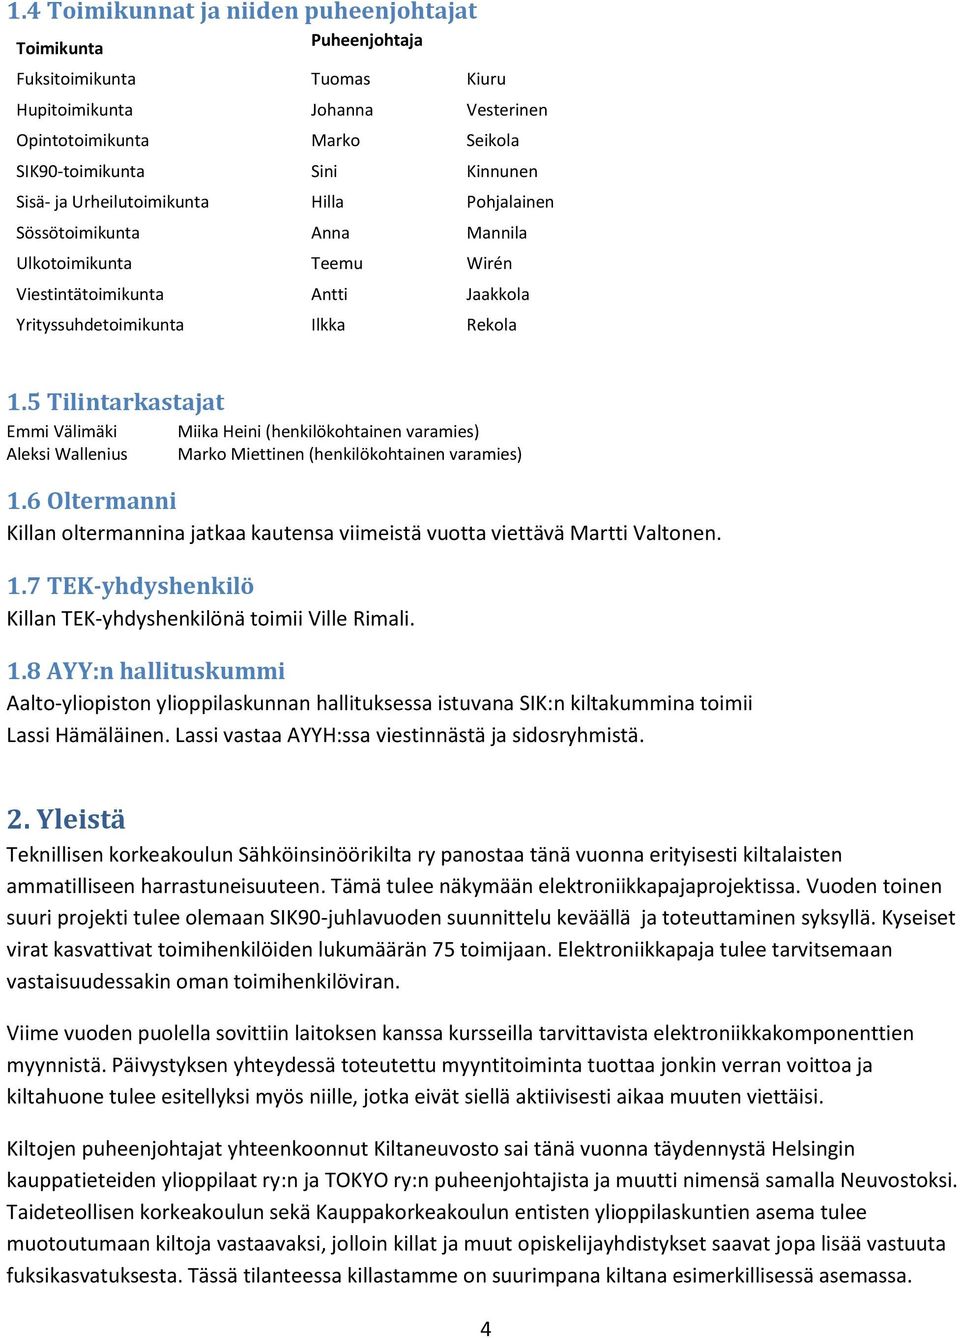 5 Tilintarkastajat Emmi Välimäki Aleksi Wallenius Miika Heini (henkilökohtainen varamies) Marko Miettinen (henkilökohtainen varamies) 1.